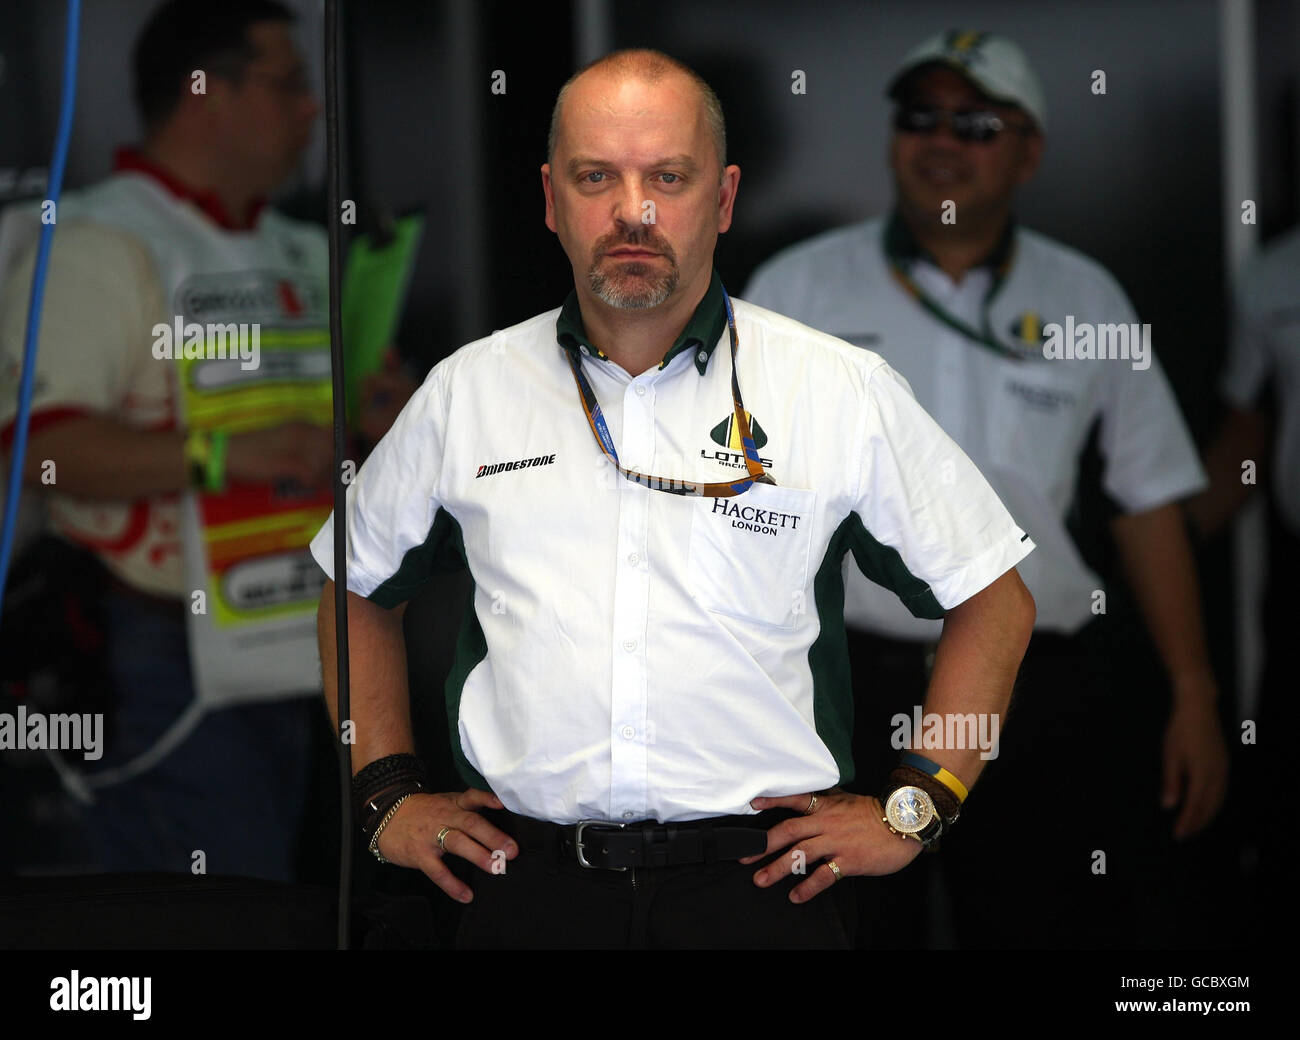 Mike Gascoyne, direttore tecnico di Lotus, prima del Gran Premio del Golfo del Bahrain al circuito Internazionale del Bahrain a Sakhir, Bahrain. Foto Stock